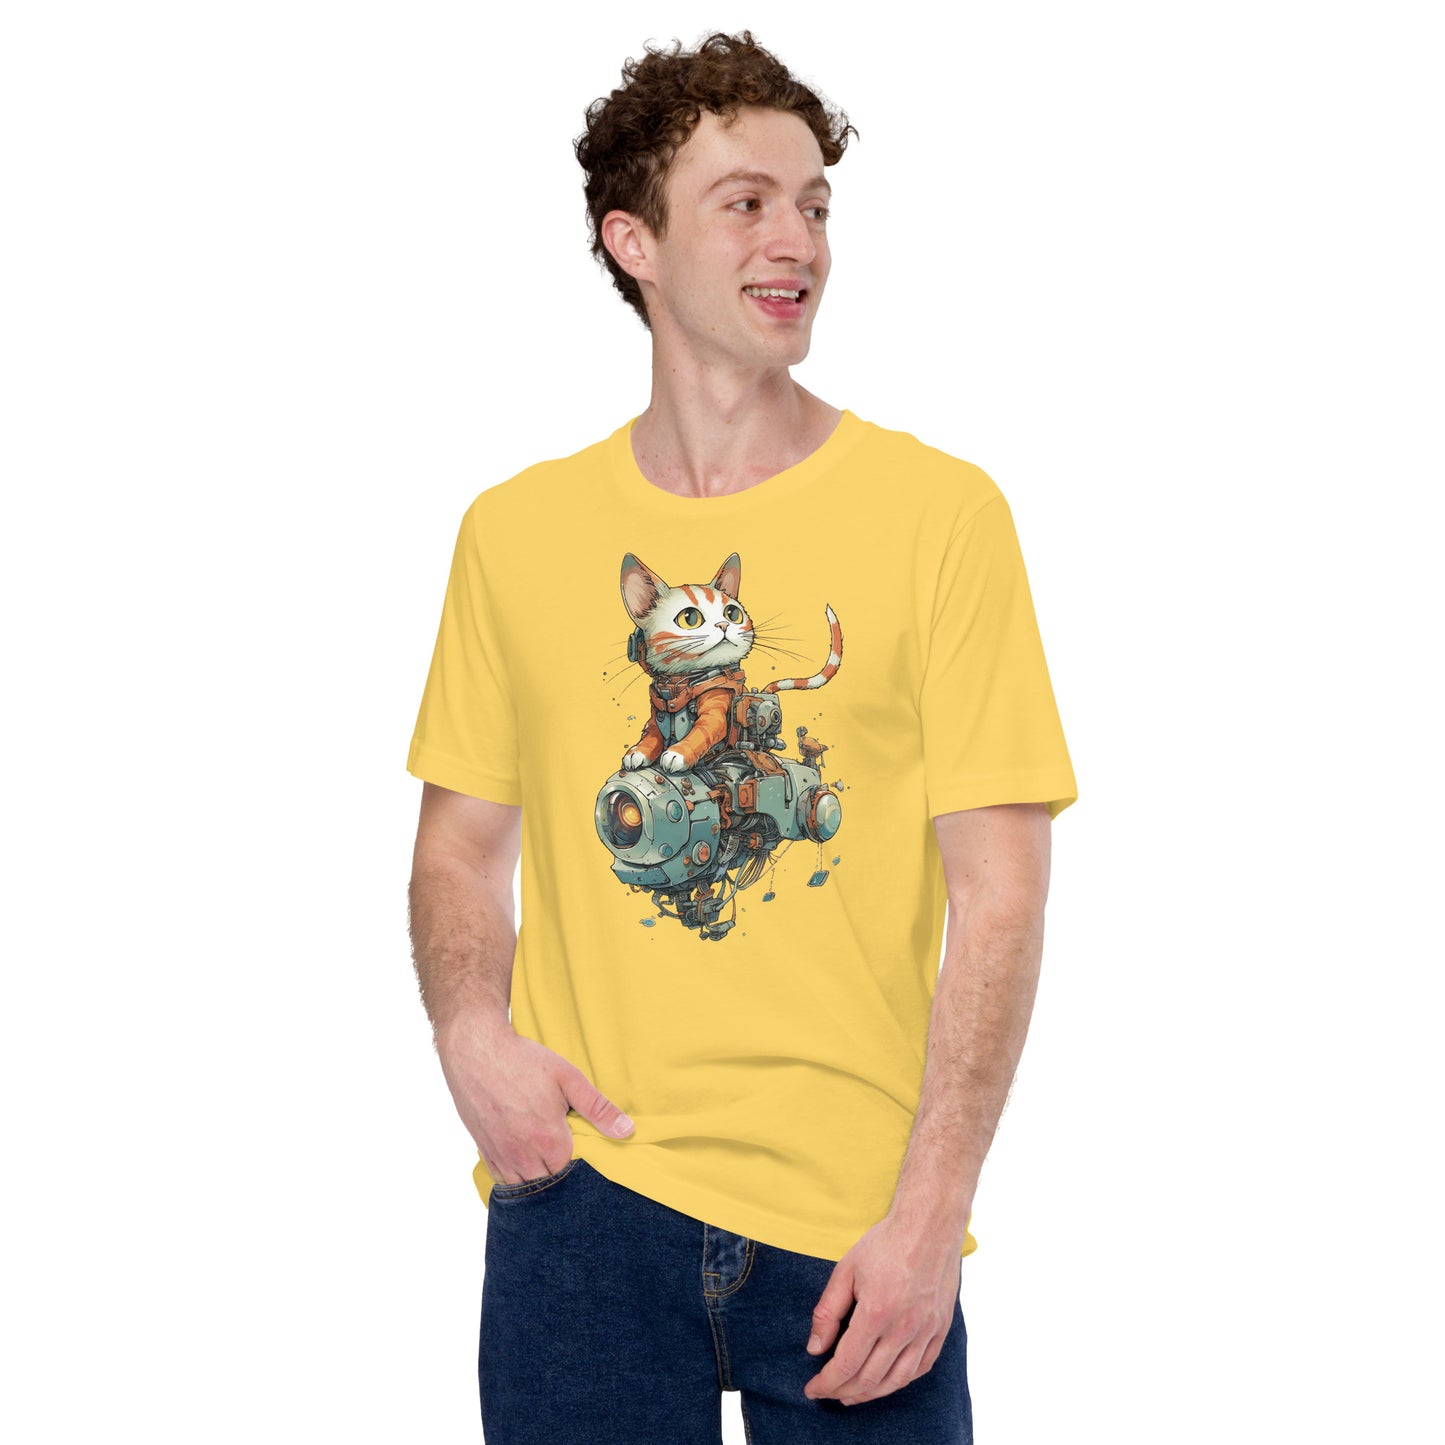 Space Ranger Cat T-Shirt